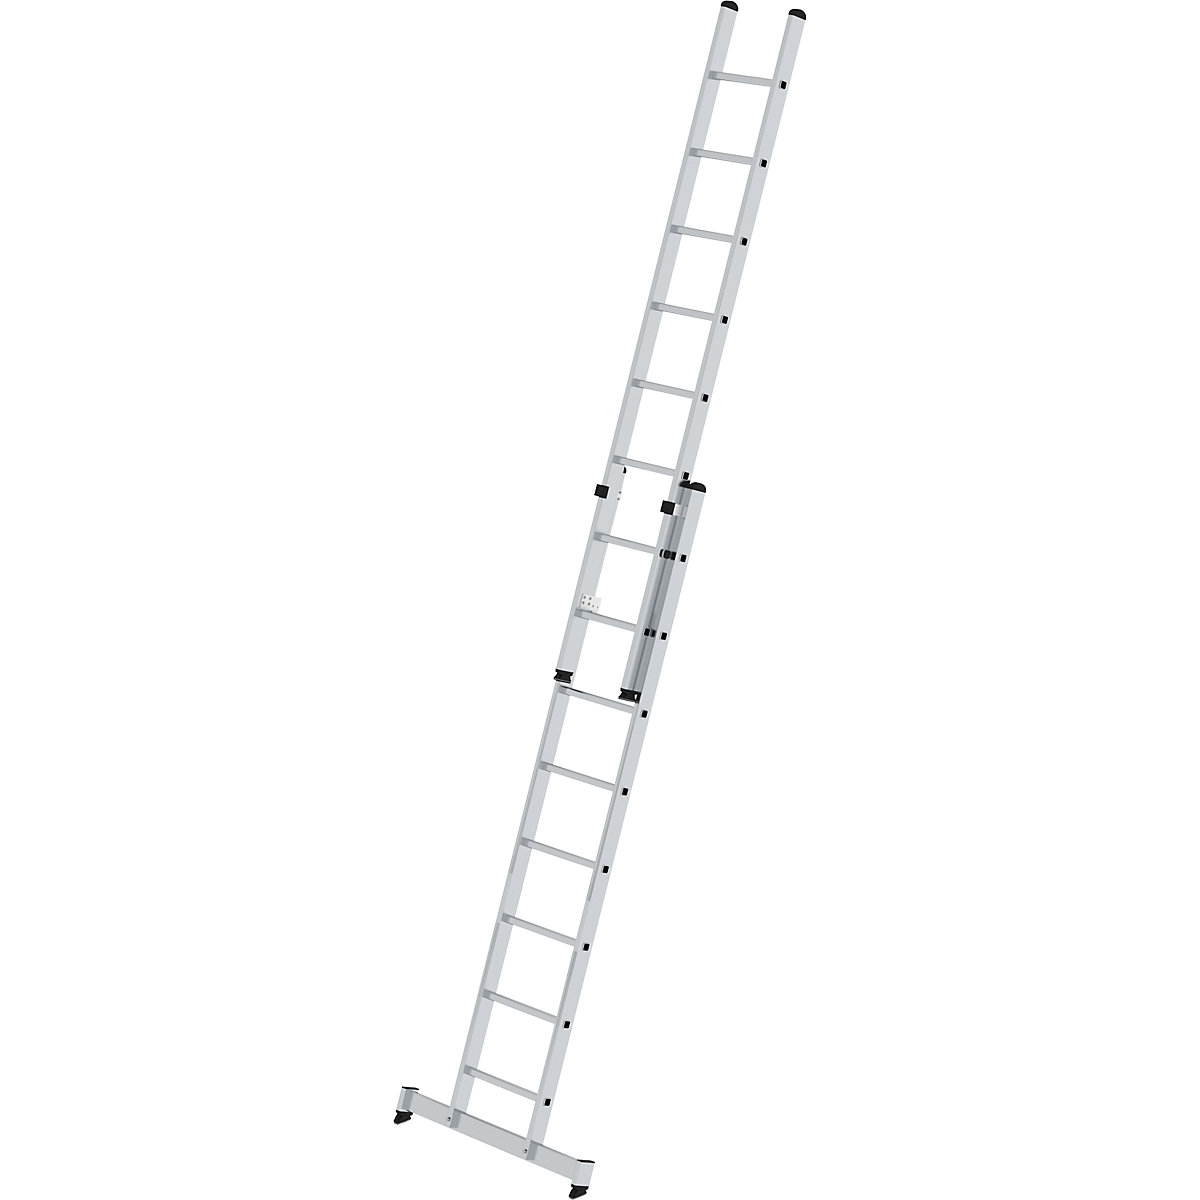 Escada de encosto ajustável em altura – MUNK, escada de regulação por deslize, 2 peças, 2 x 8 degraus, com travessa nivello®-10